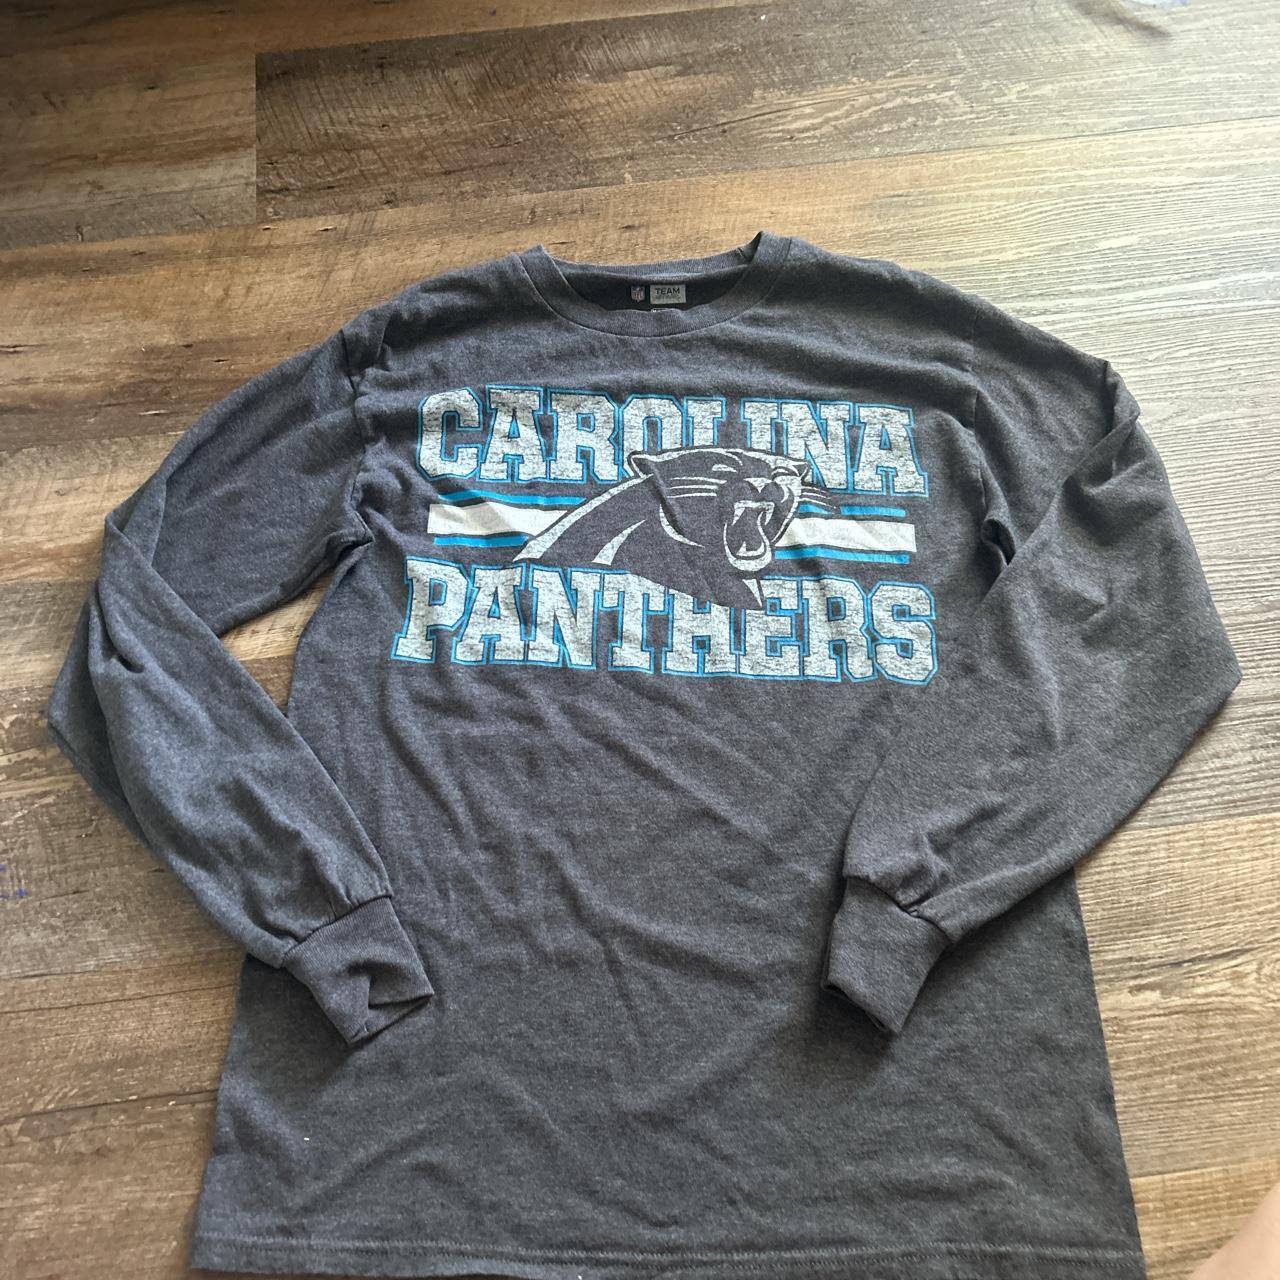 carolina panthers blue shirt